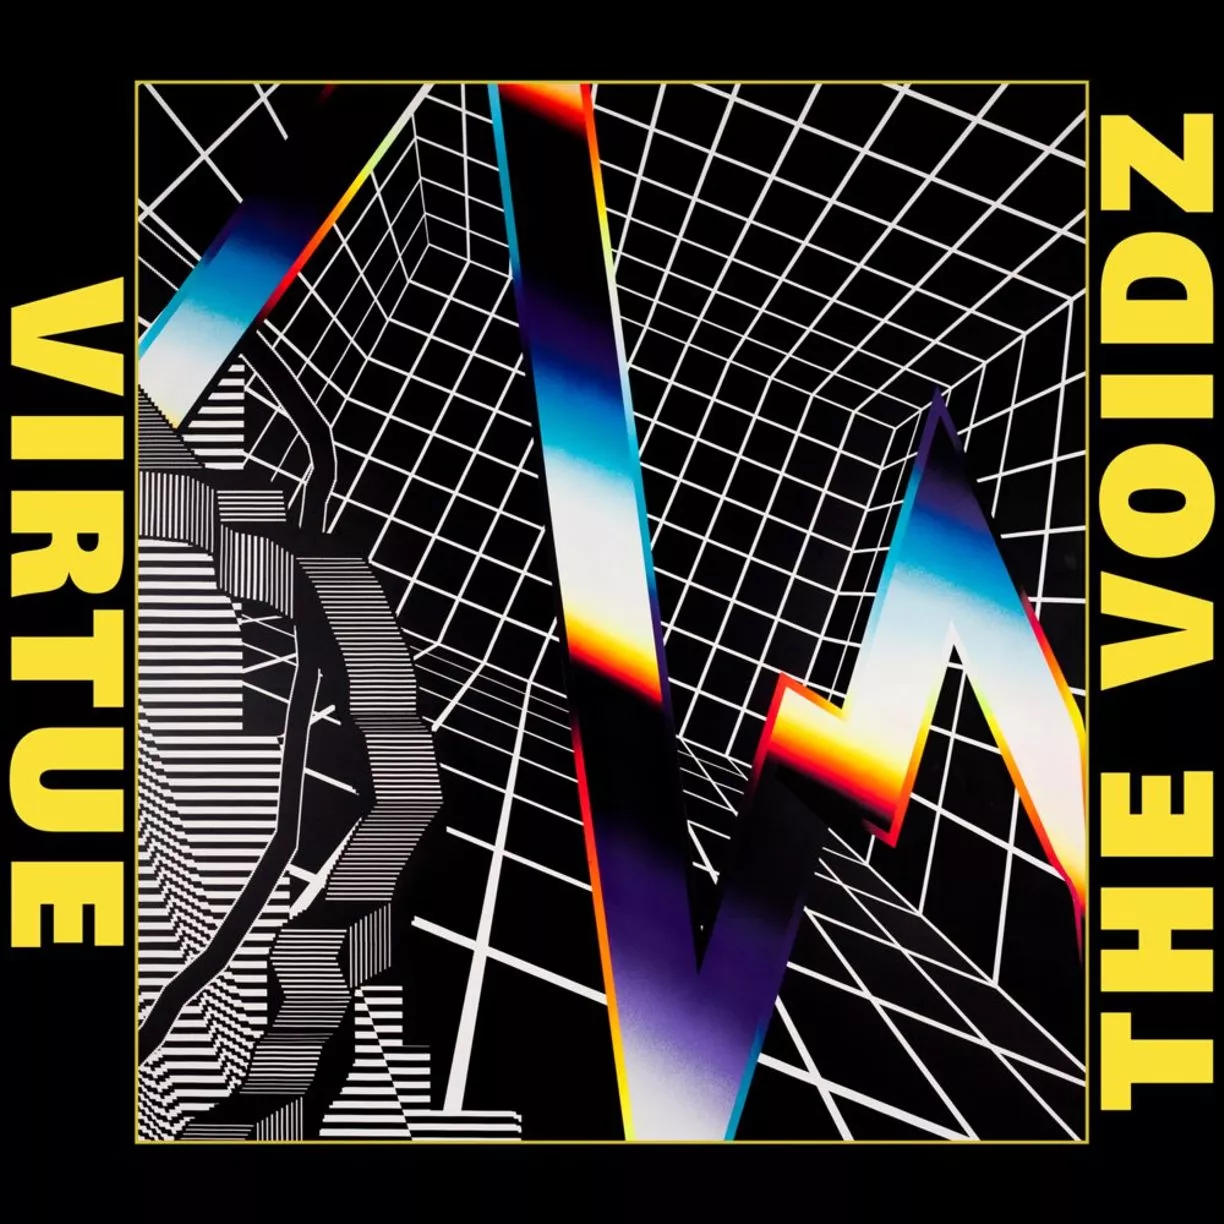 Virtue - The Voidz